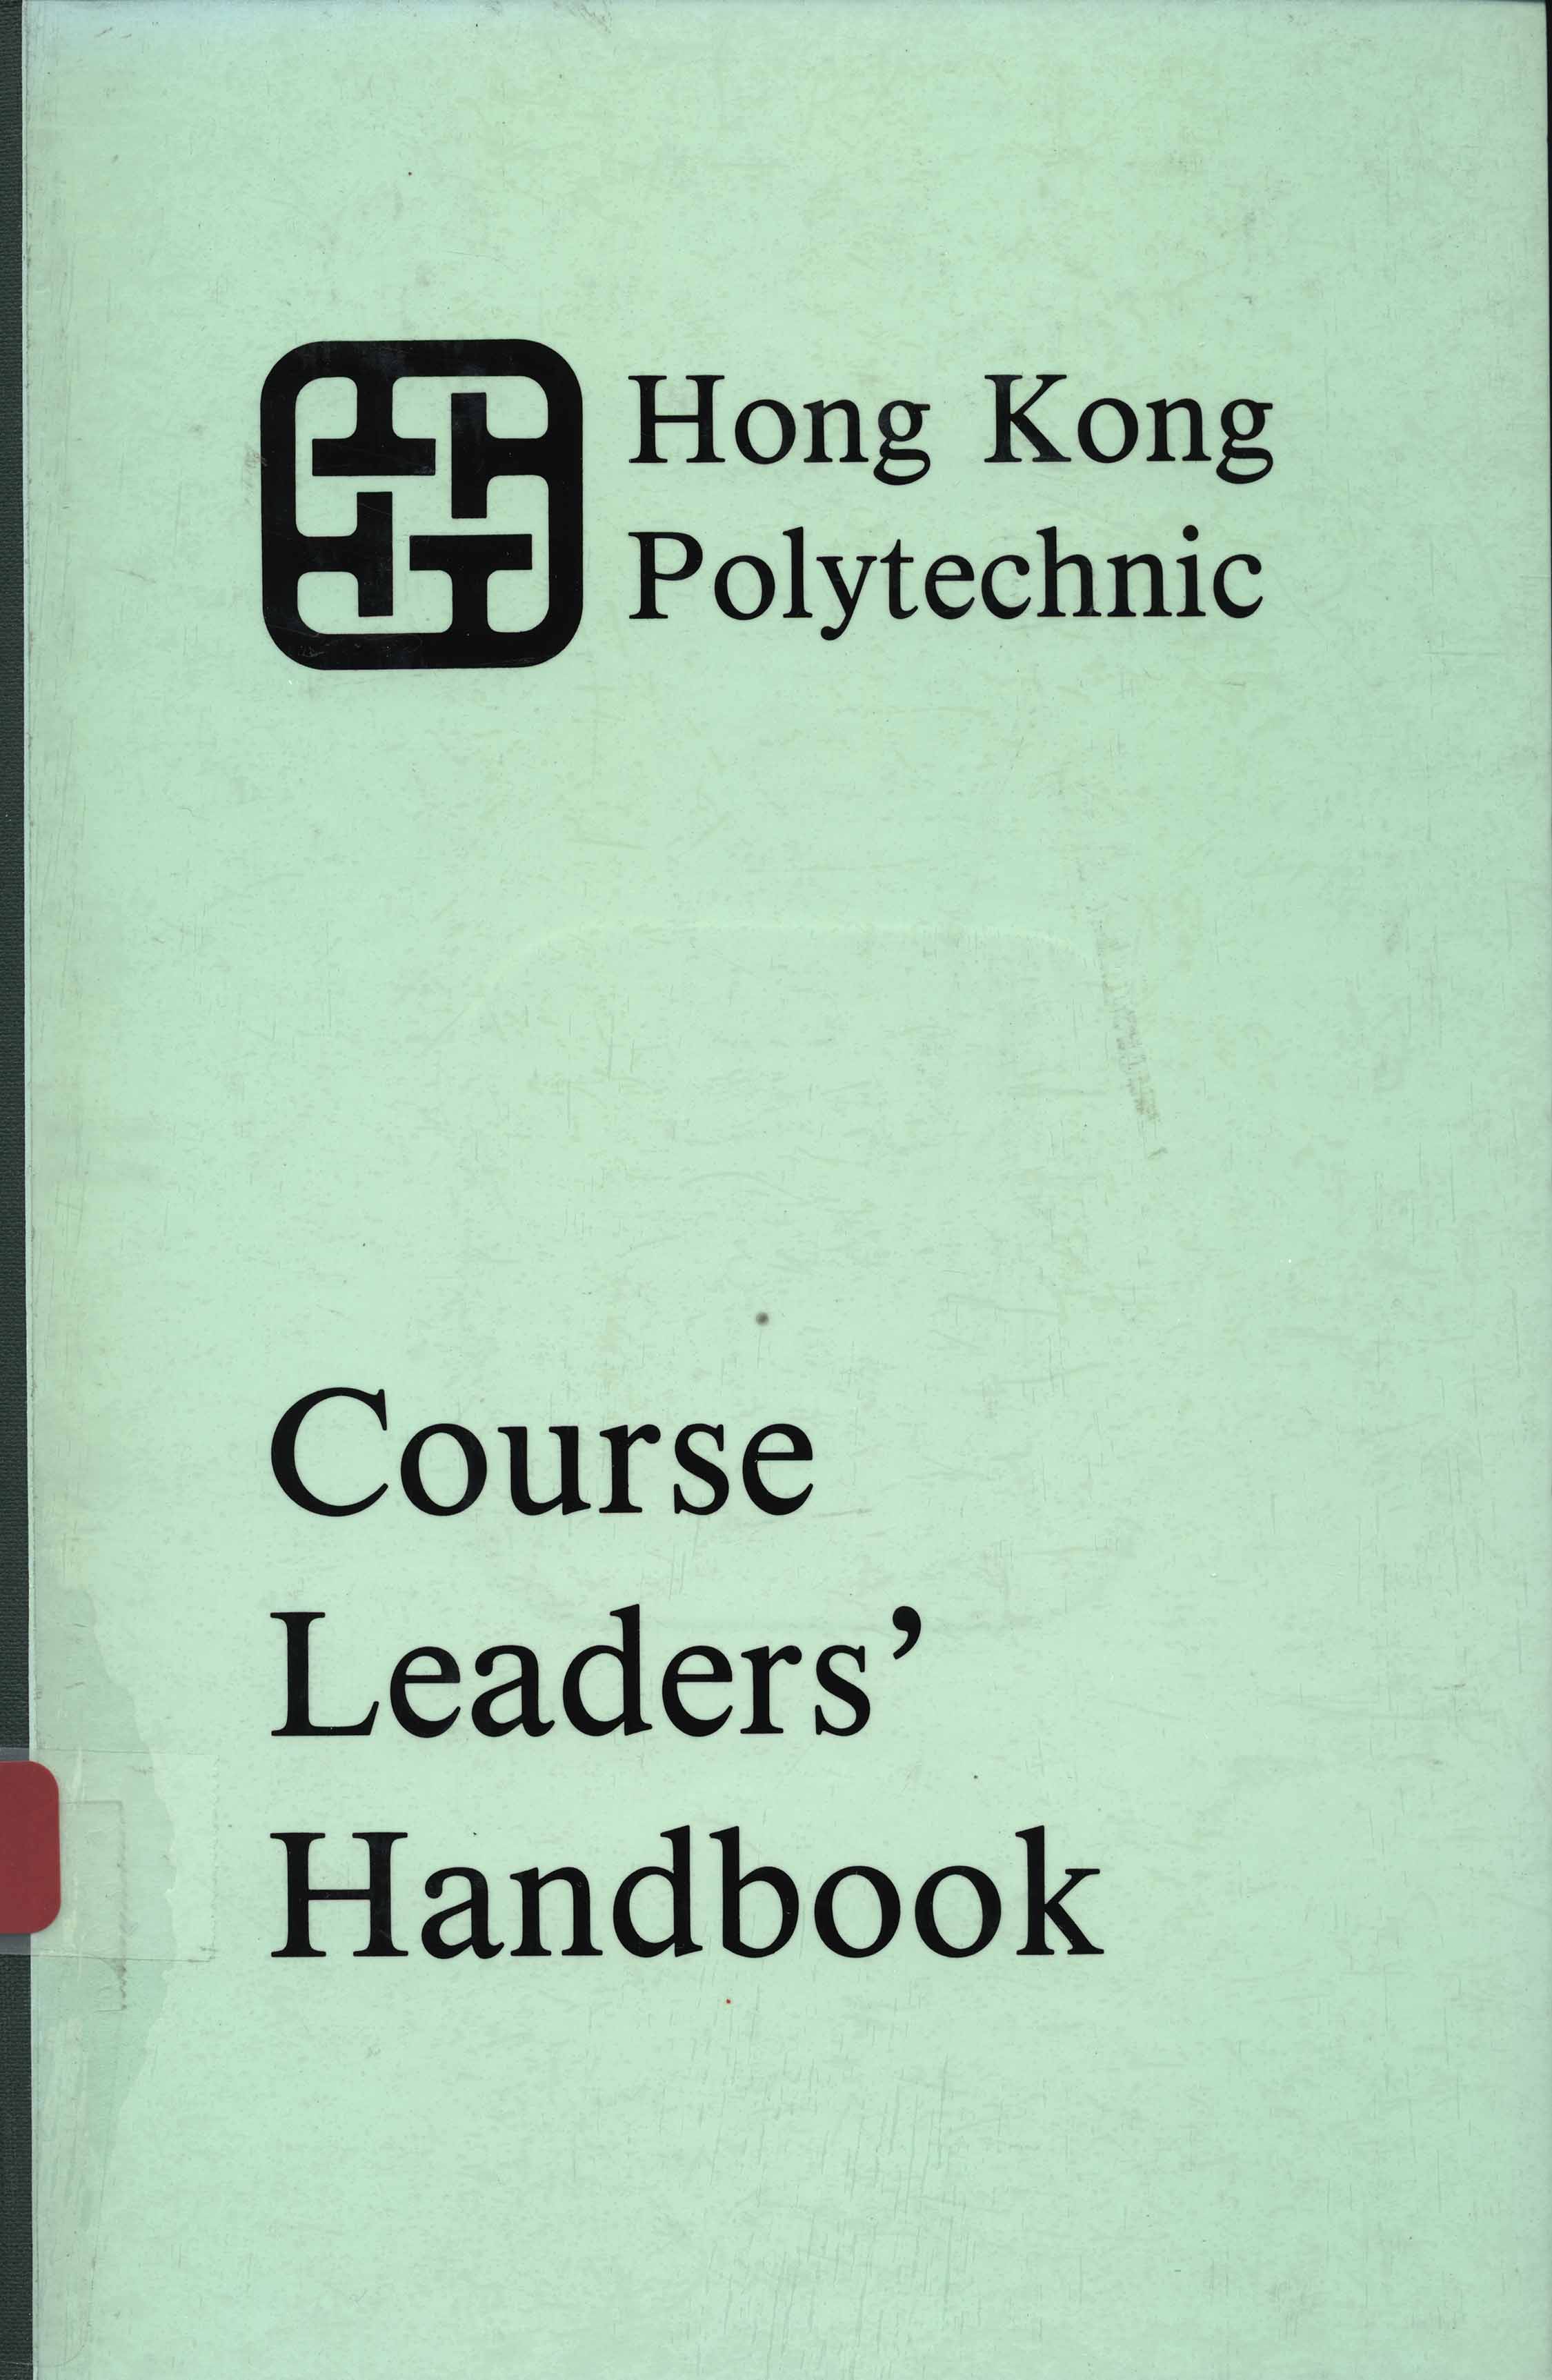 Course leaders' handbook [1989]